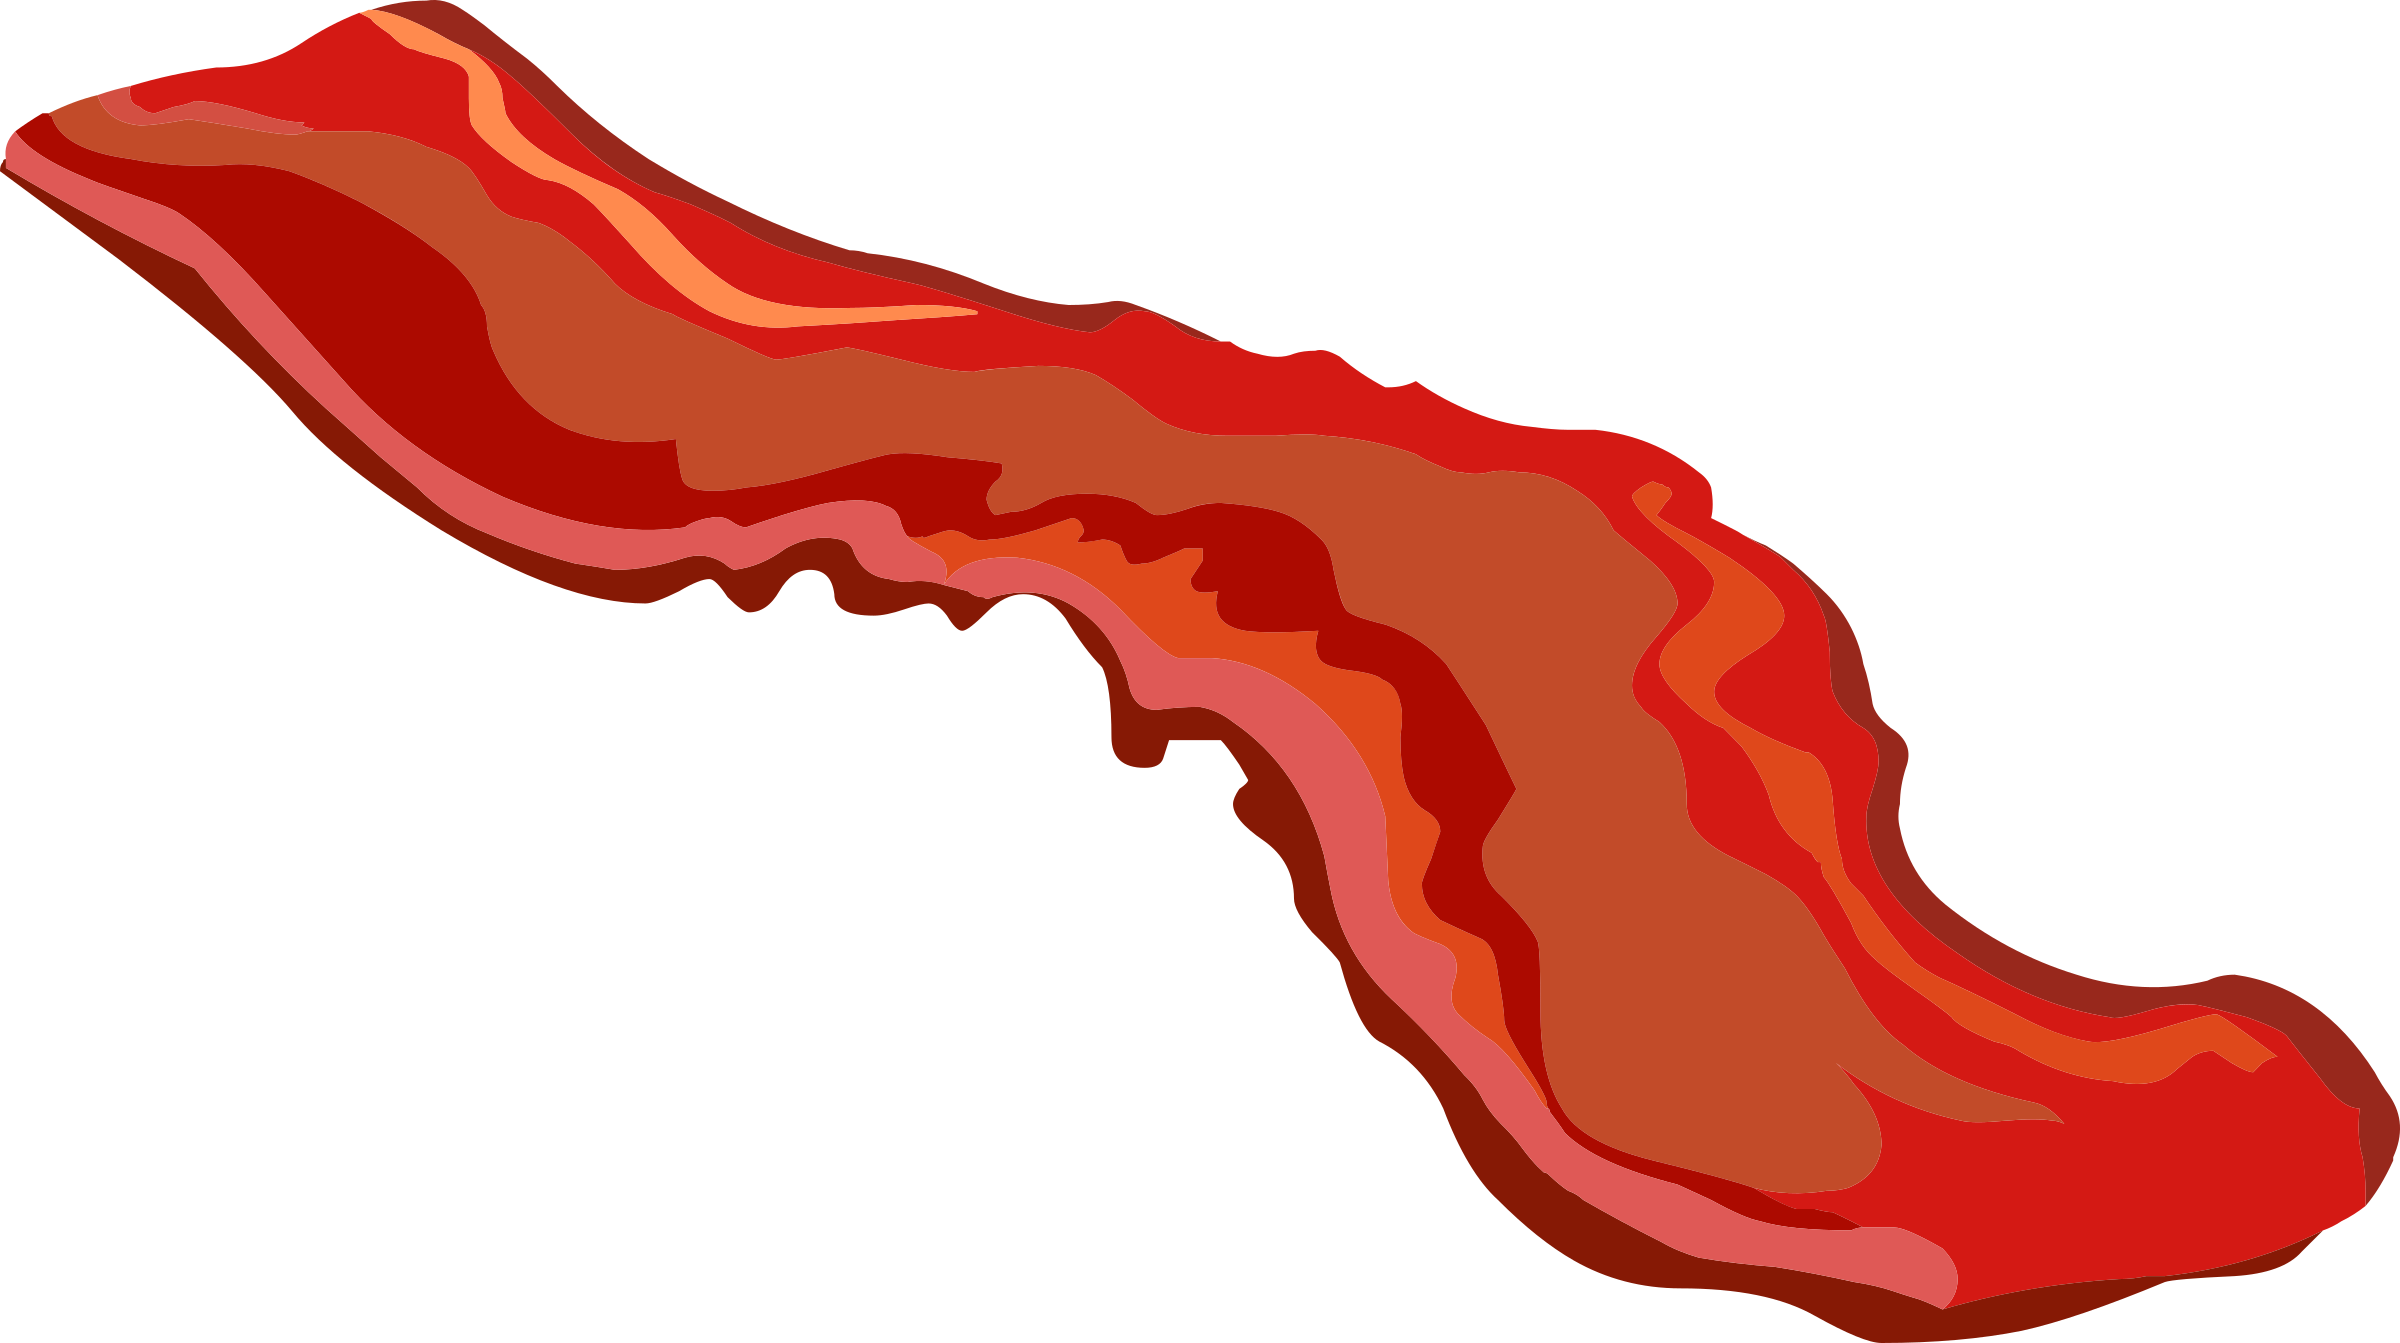 Free To Use &, Public Domain Bacon Clip Art - Bacon Strip Clip Art (2400x1343)